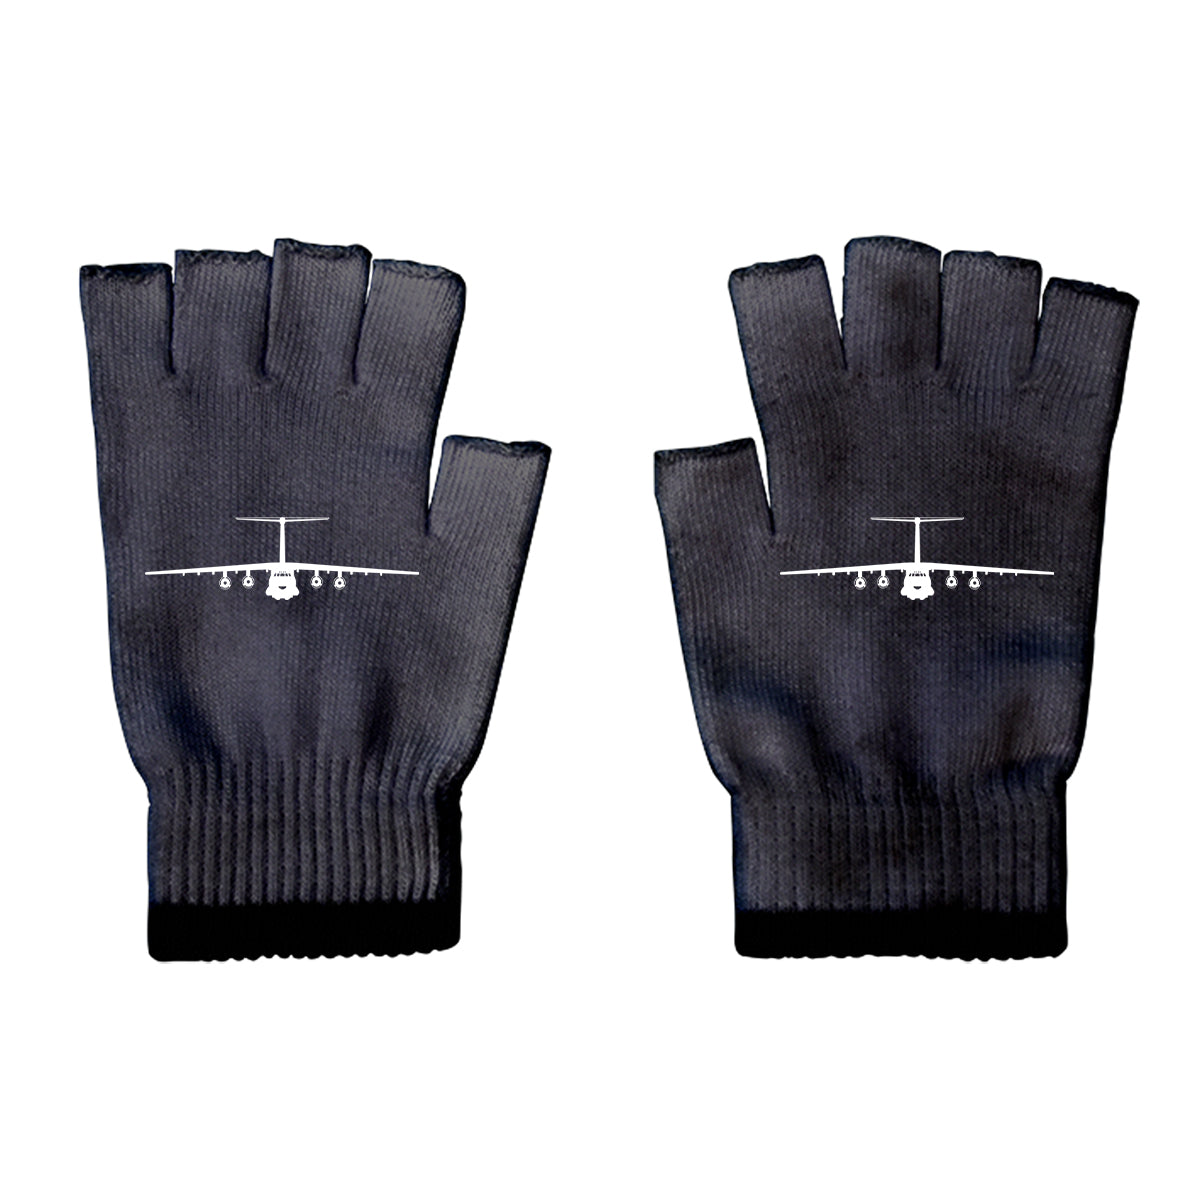 Ilyushin IL-76 Silhouette Designed Cut Gloves